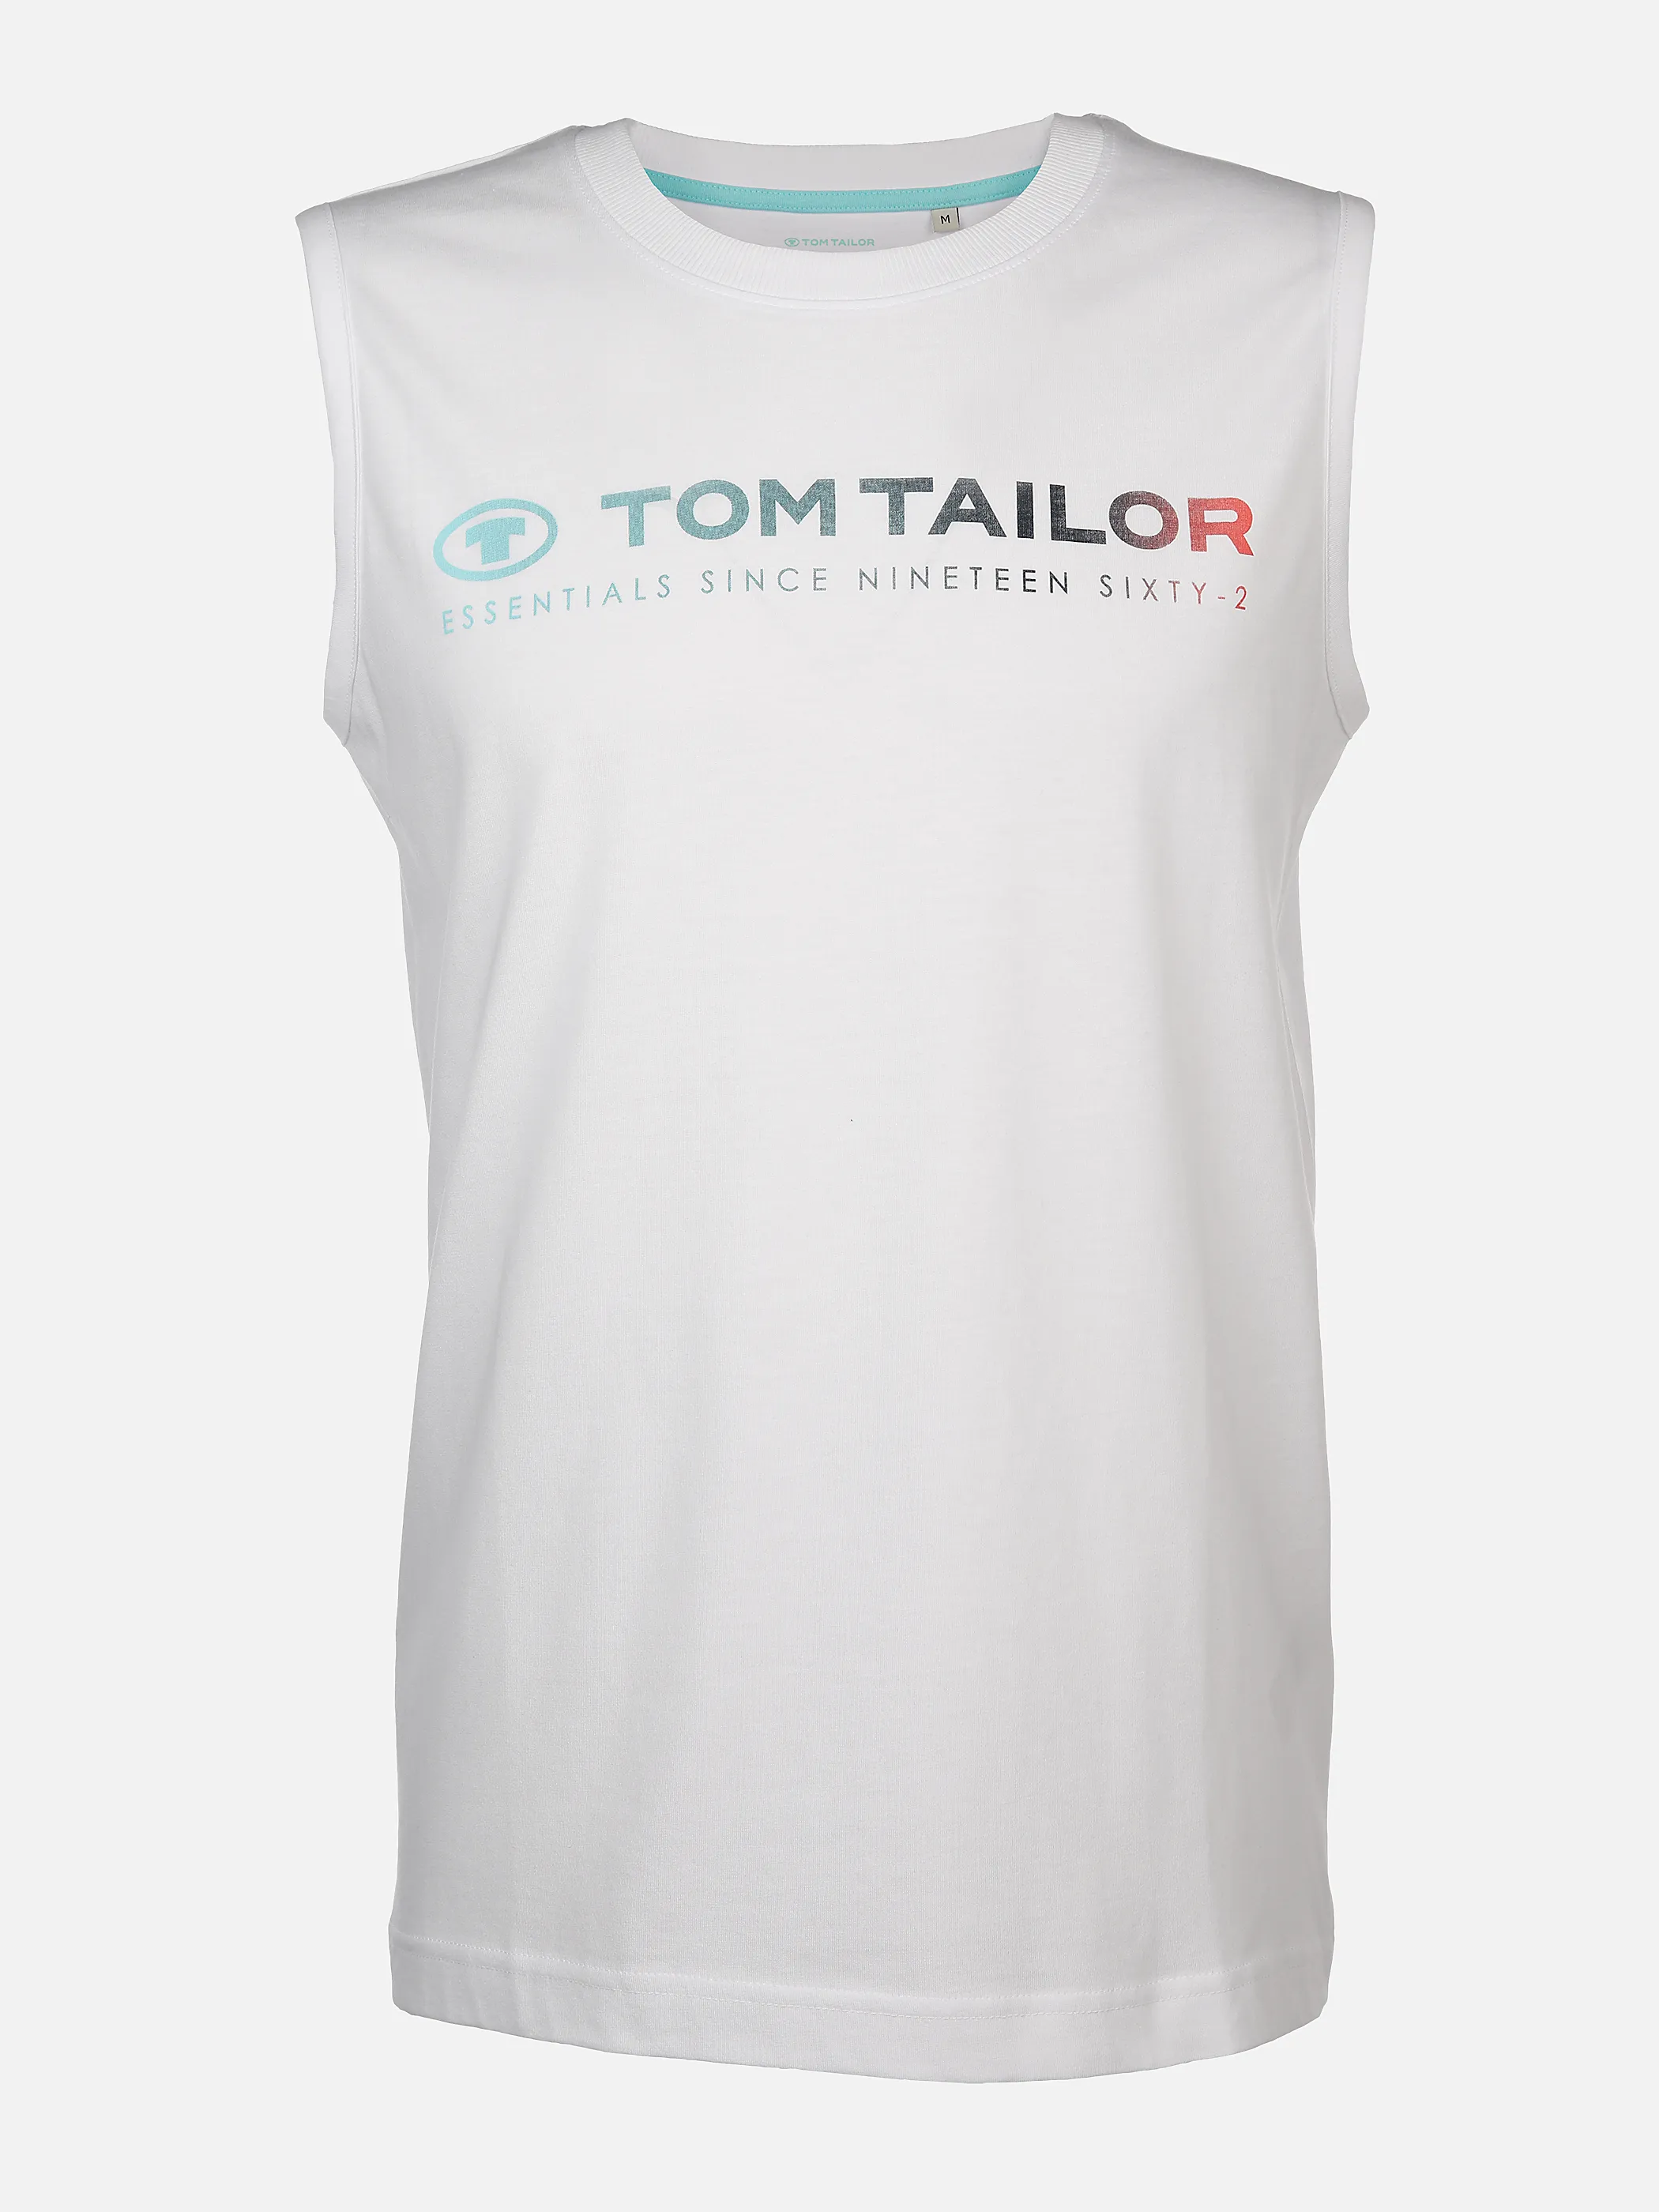 Tom Tailor 1041866 printed tanktop Weiß 895643 20000 1